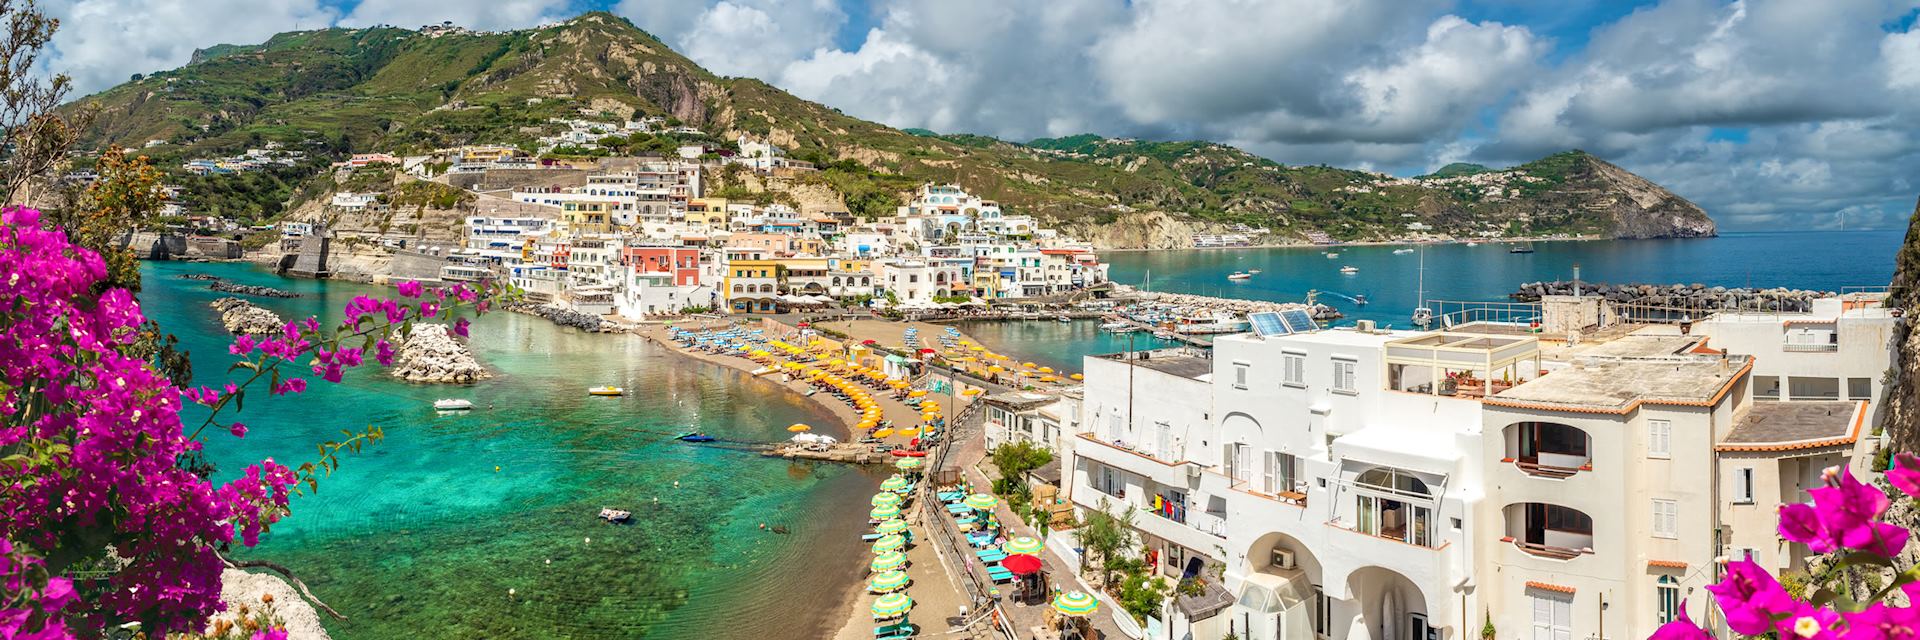 Coastal scenery of Ischia